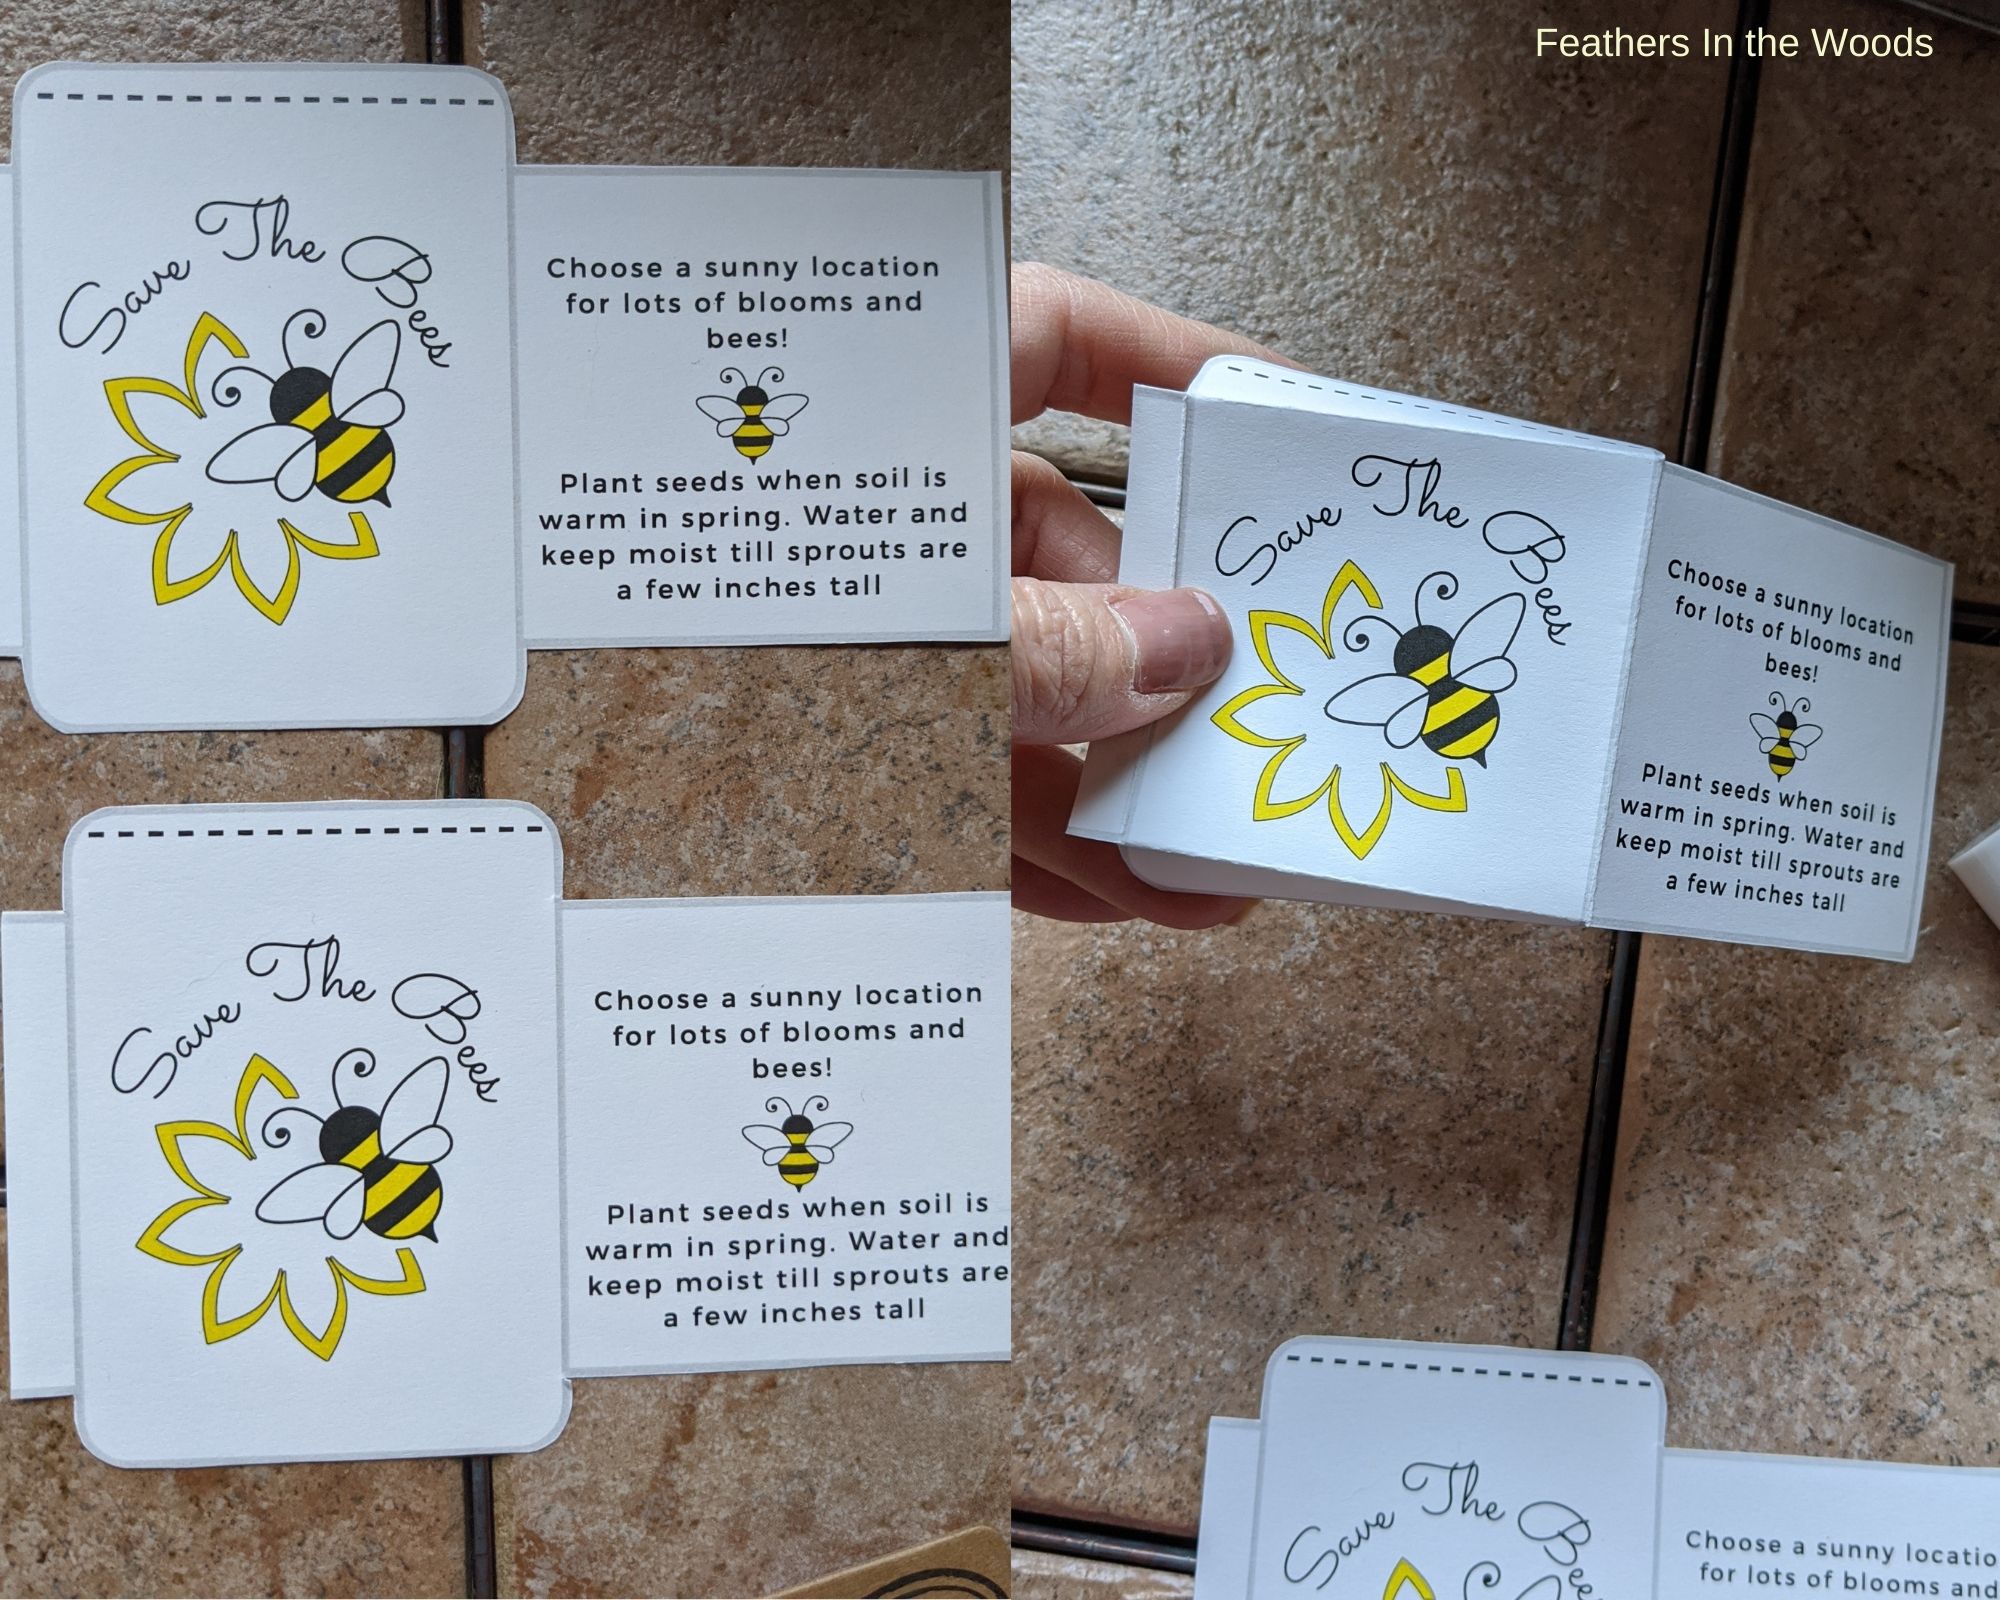 Printable Seed Packet Envelopes